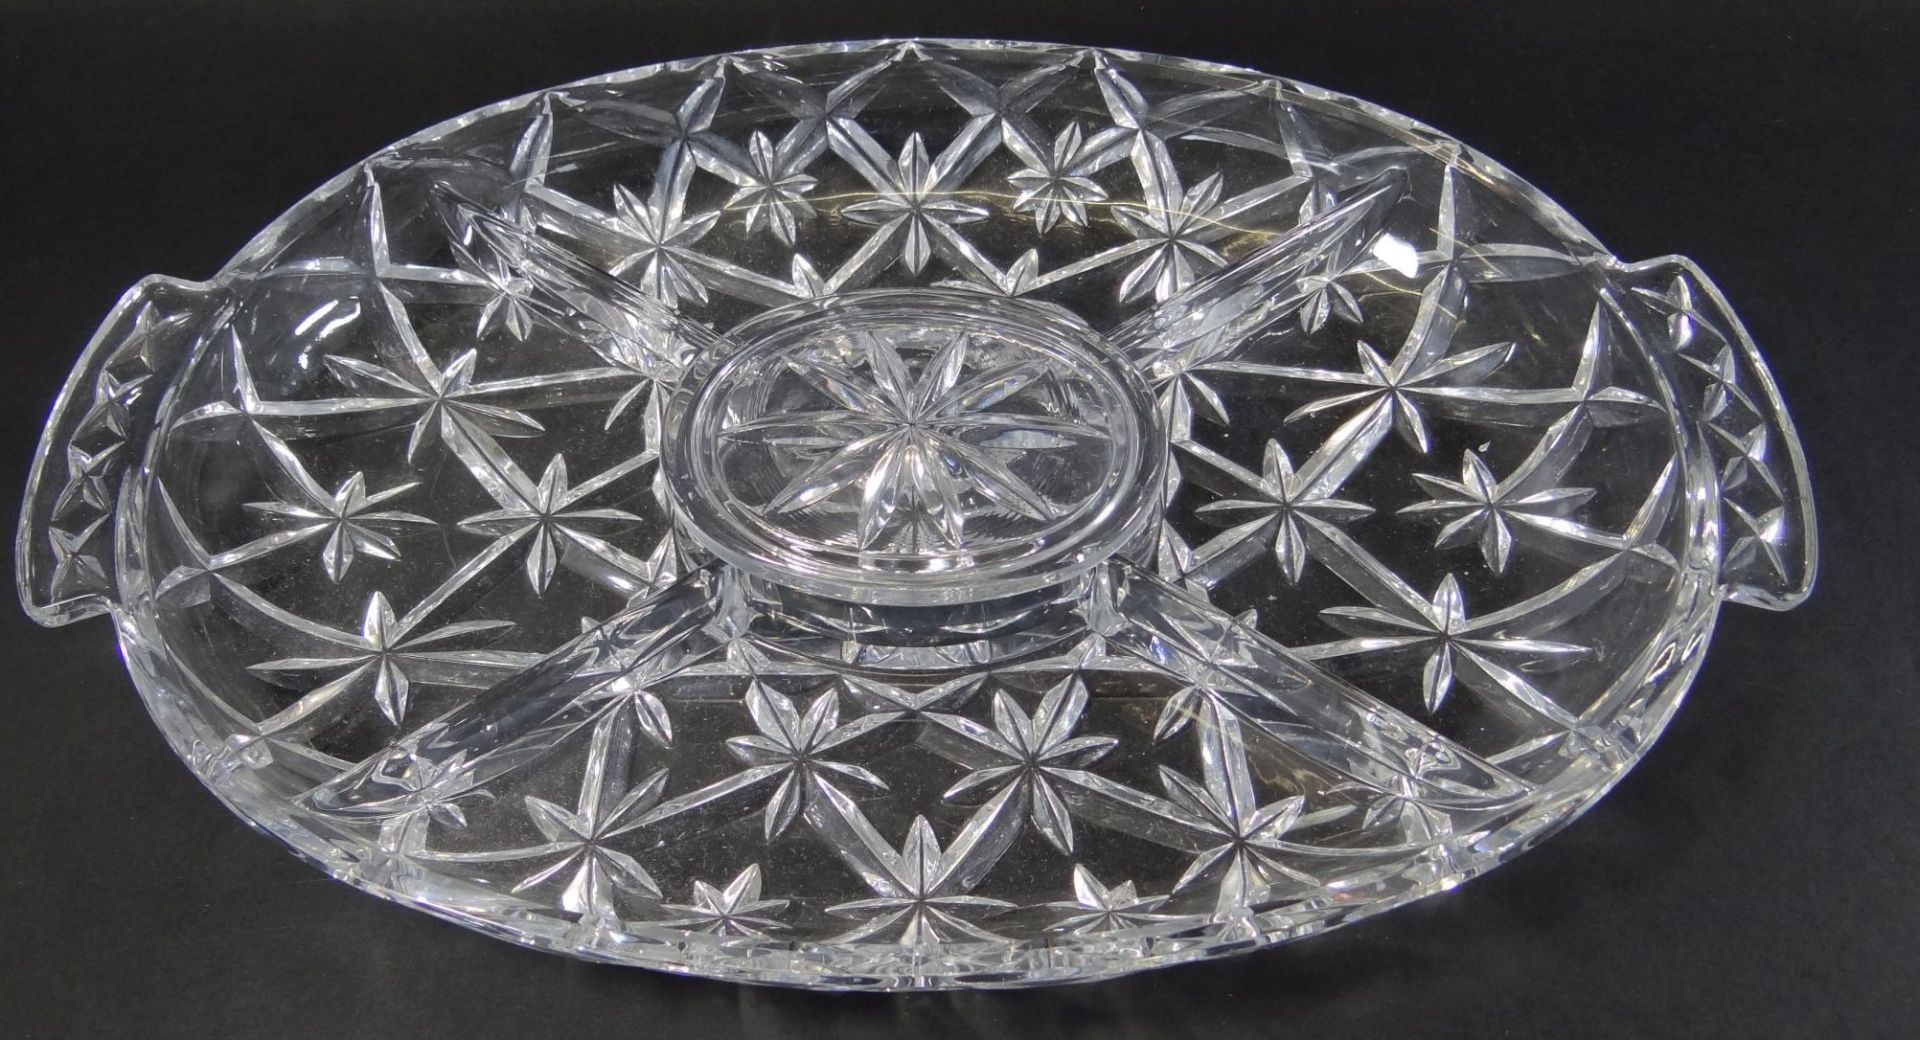 grosses, schweres ovales Kristall-Kabarette, mittig mit Deckel, 35x23 cm